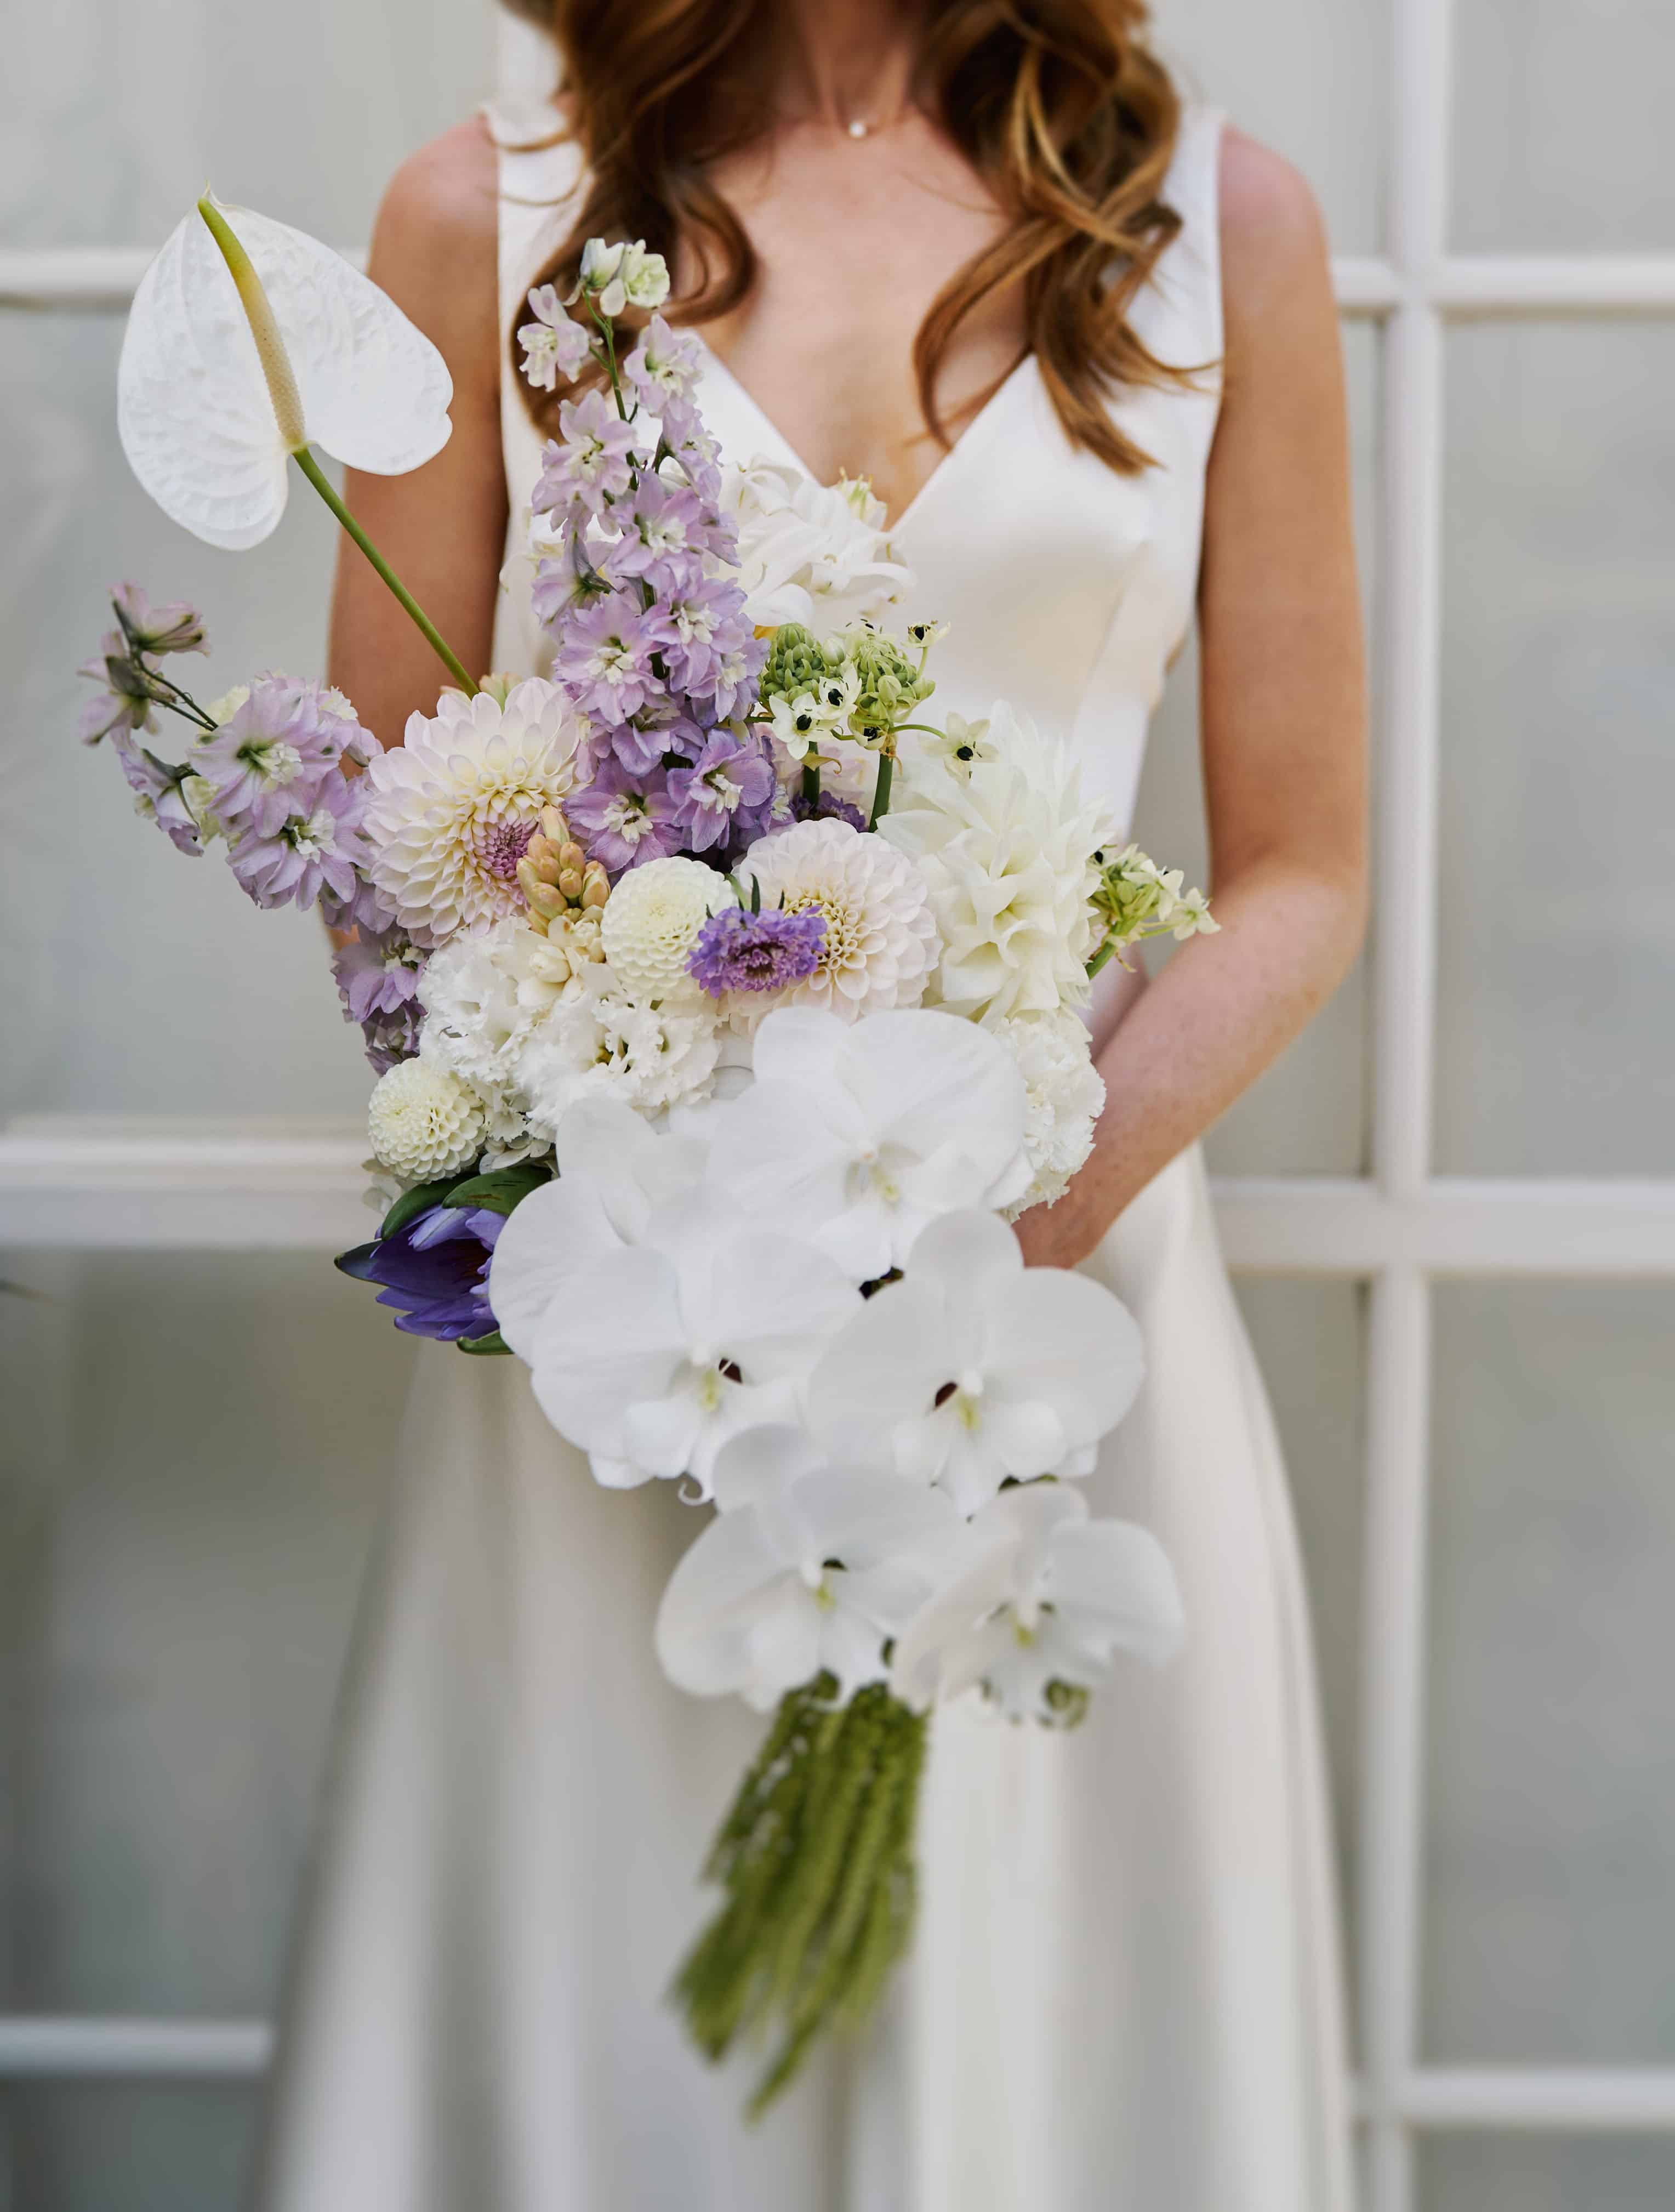 Wedding florist Melbourne providing florals for brides